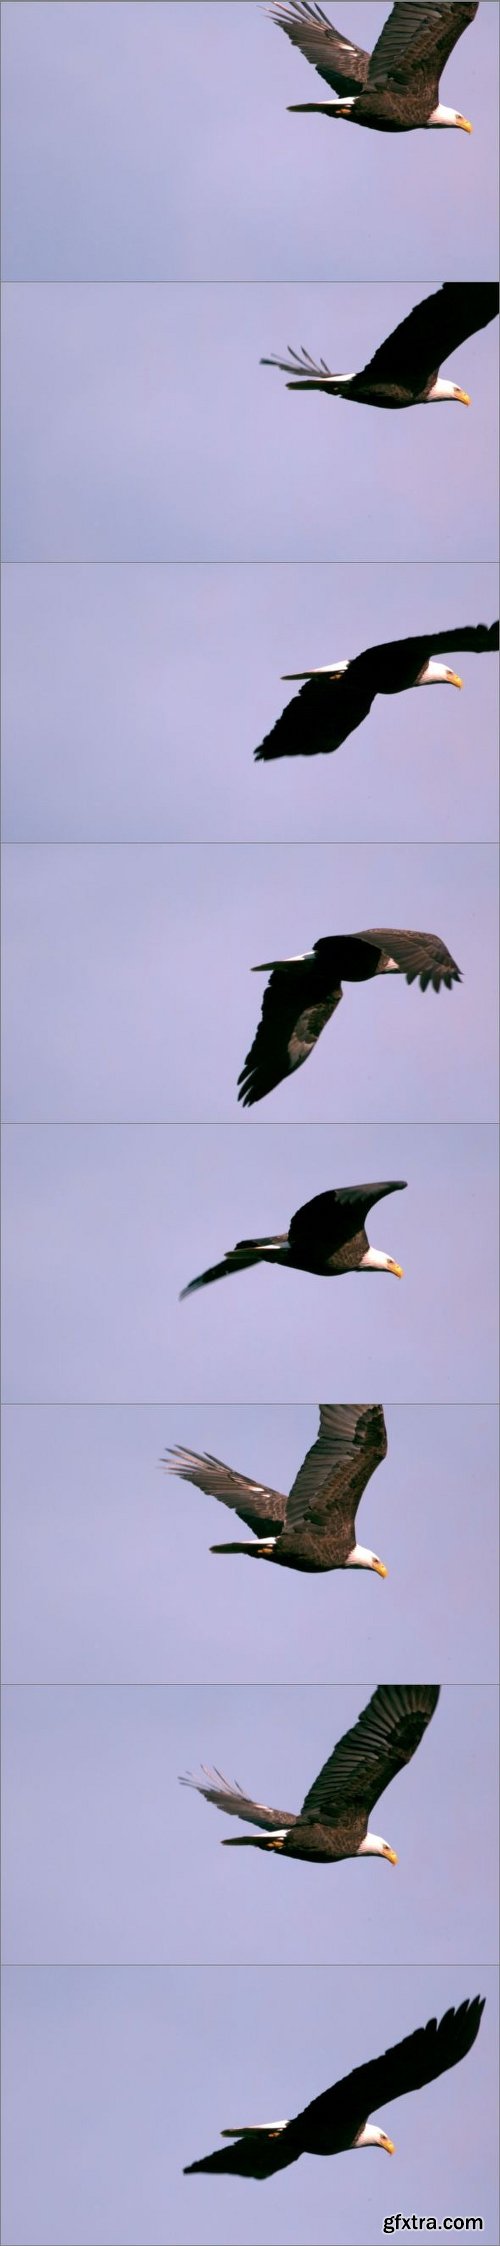 Slow Motion Soaring Bald Eagle Closeup 2